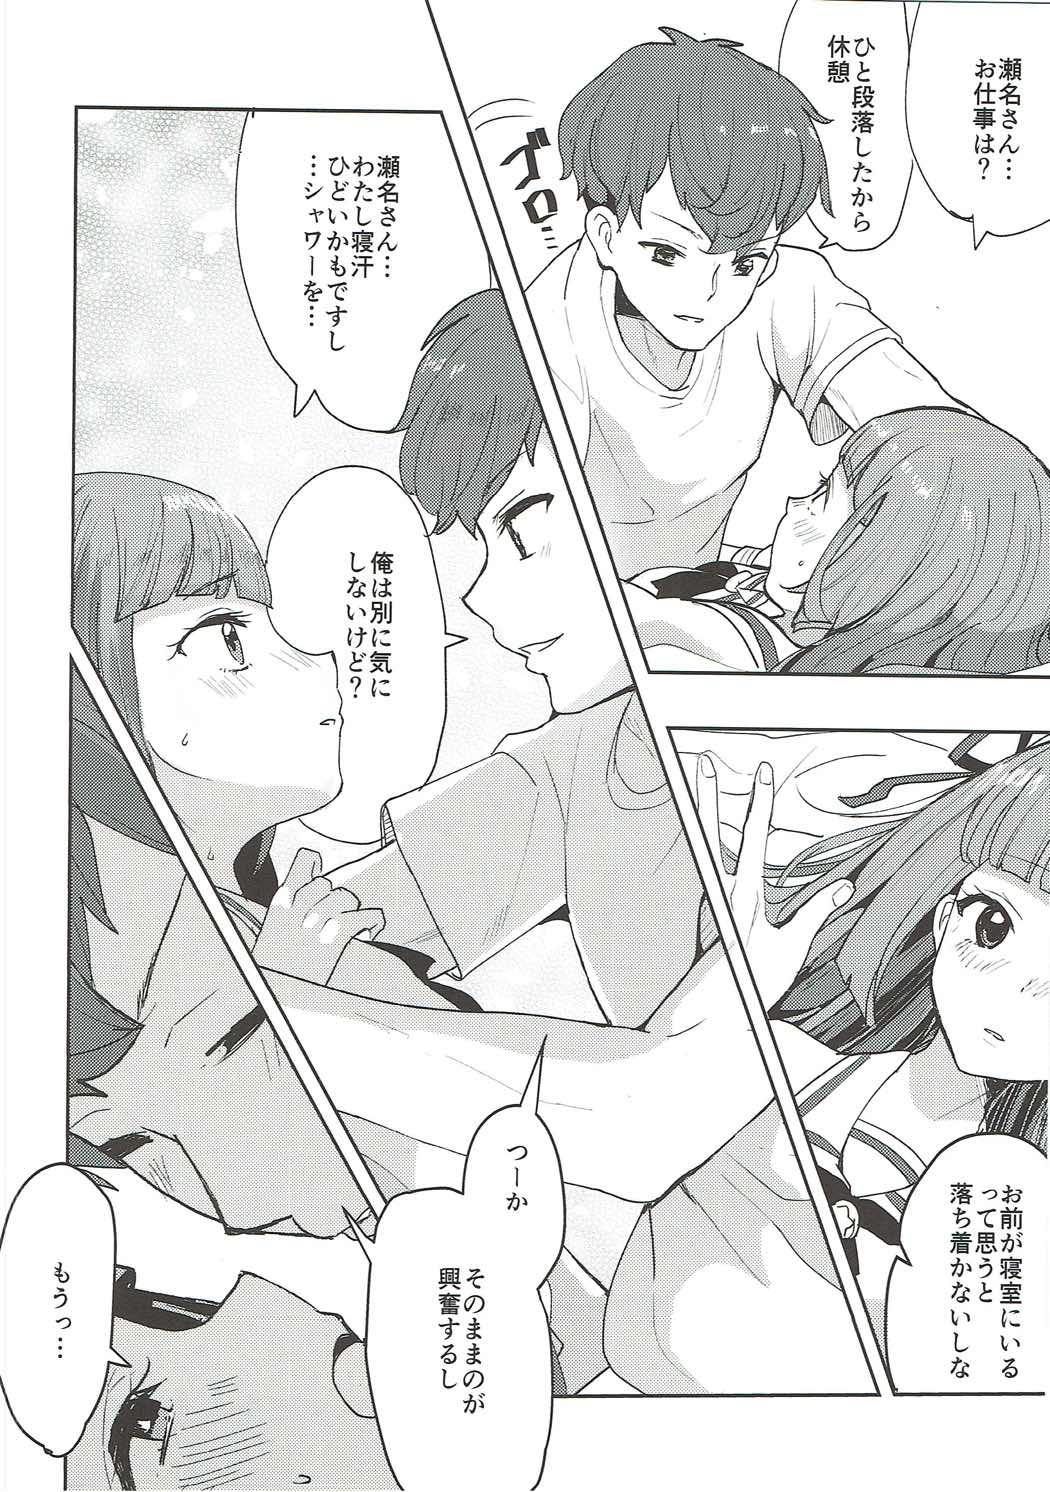 Gilf Gomen ne, Akari-chan. - Aikatsu 3way - Page 13